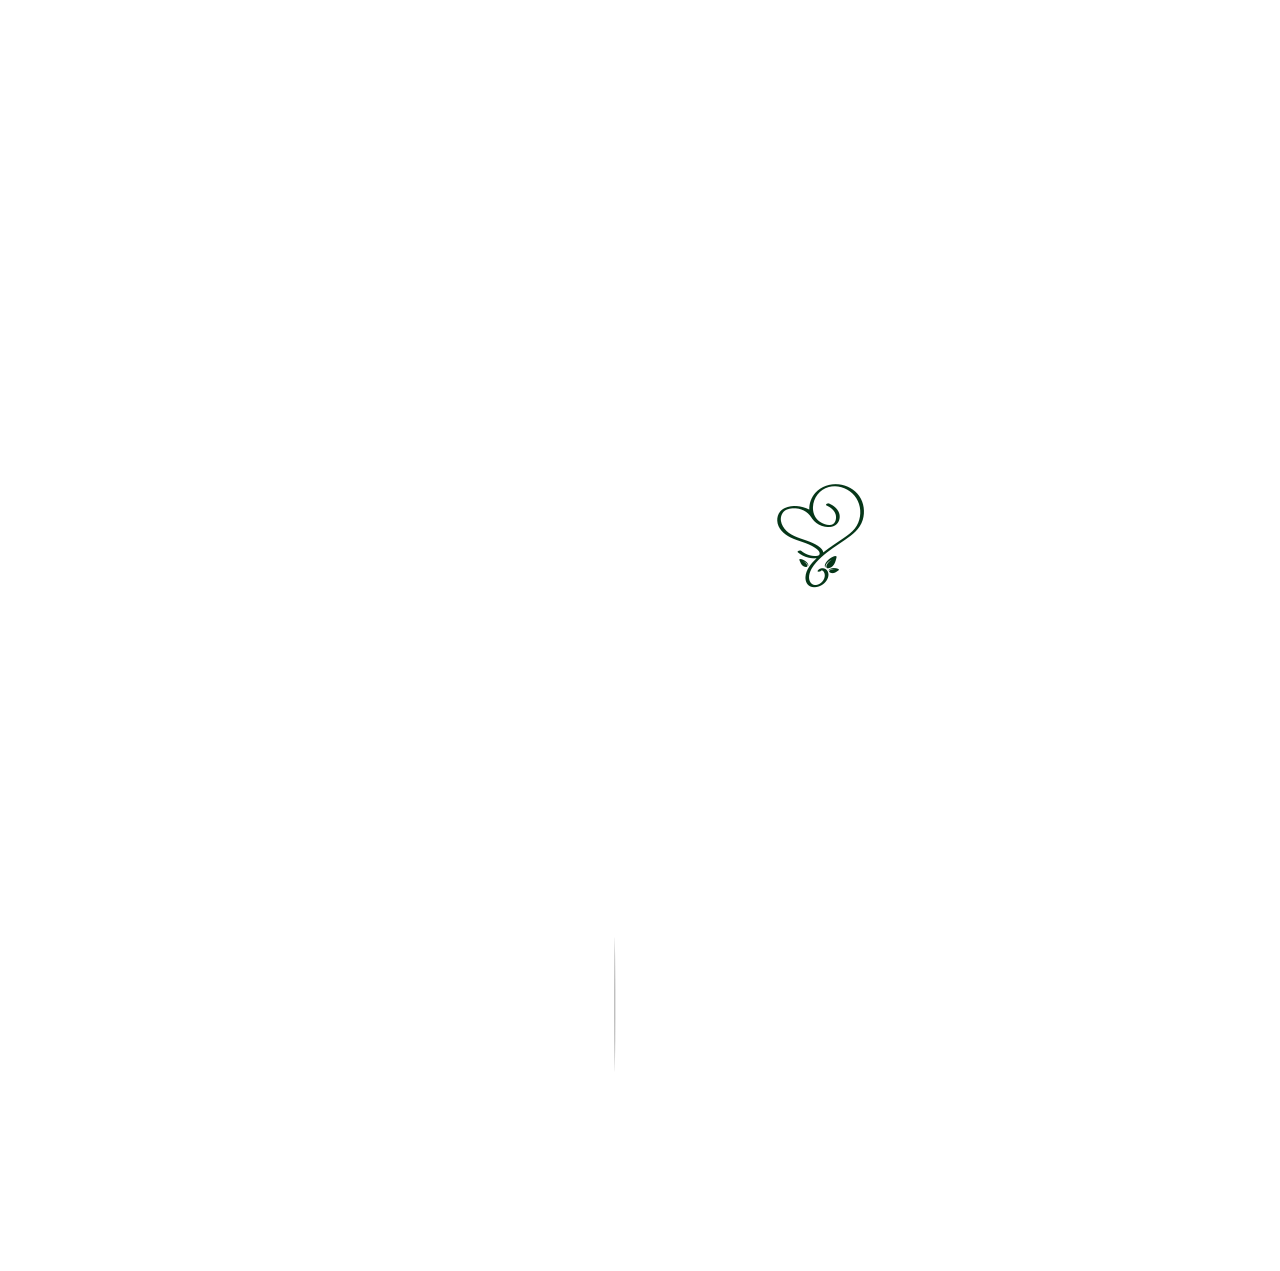 Mona's Memory Lane's web page